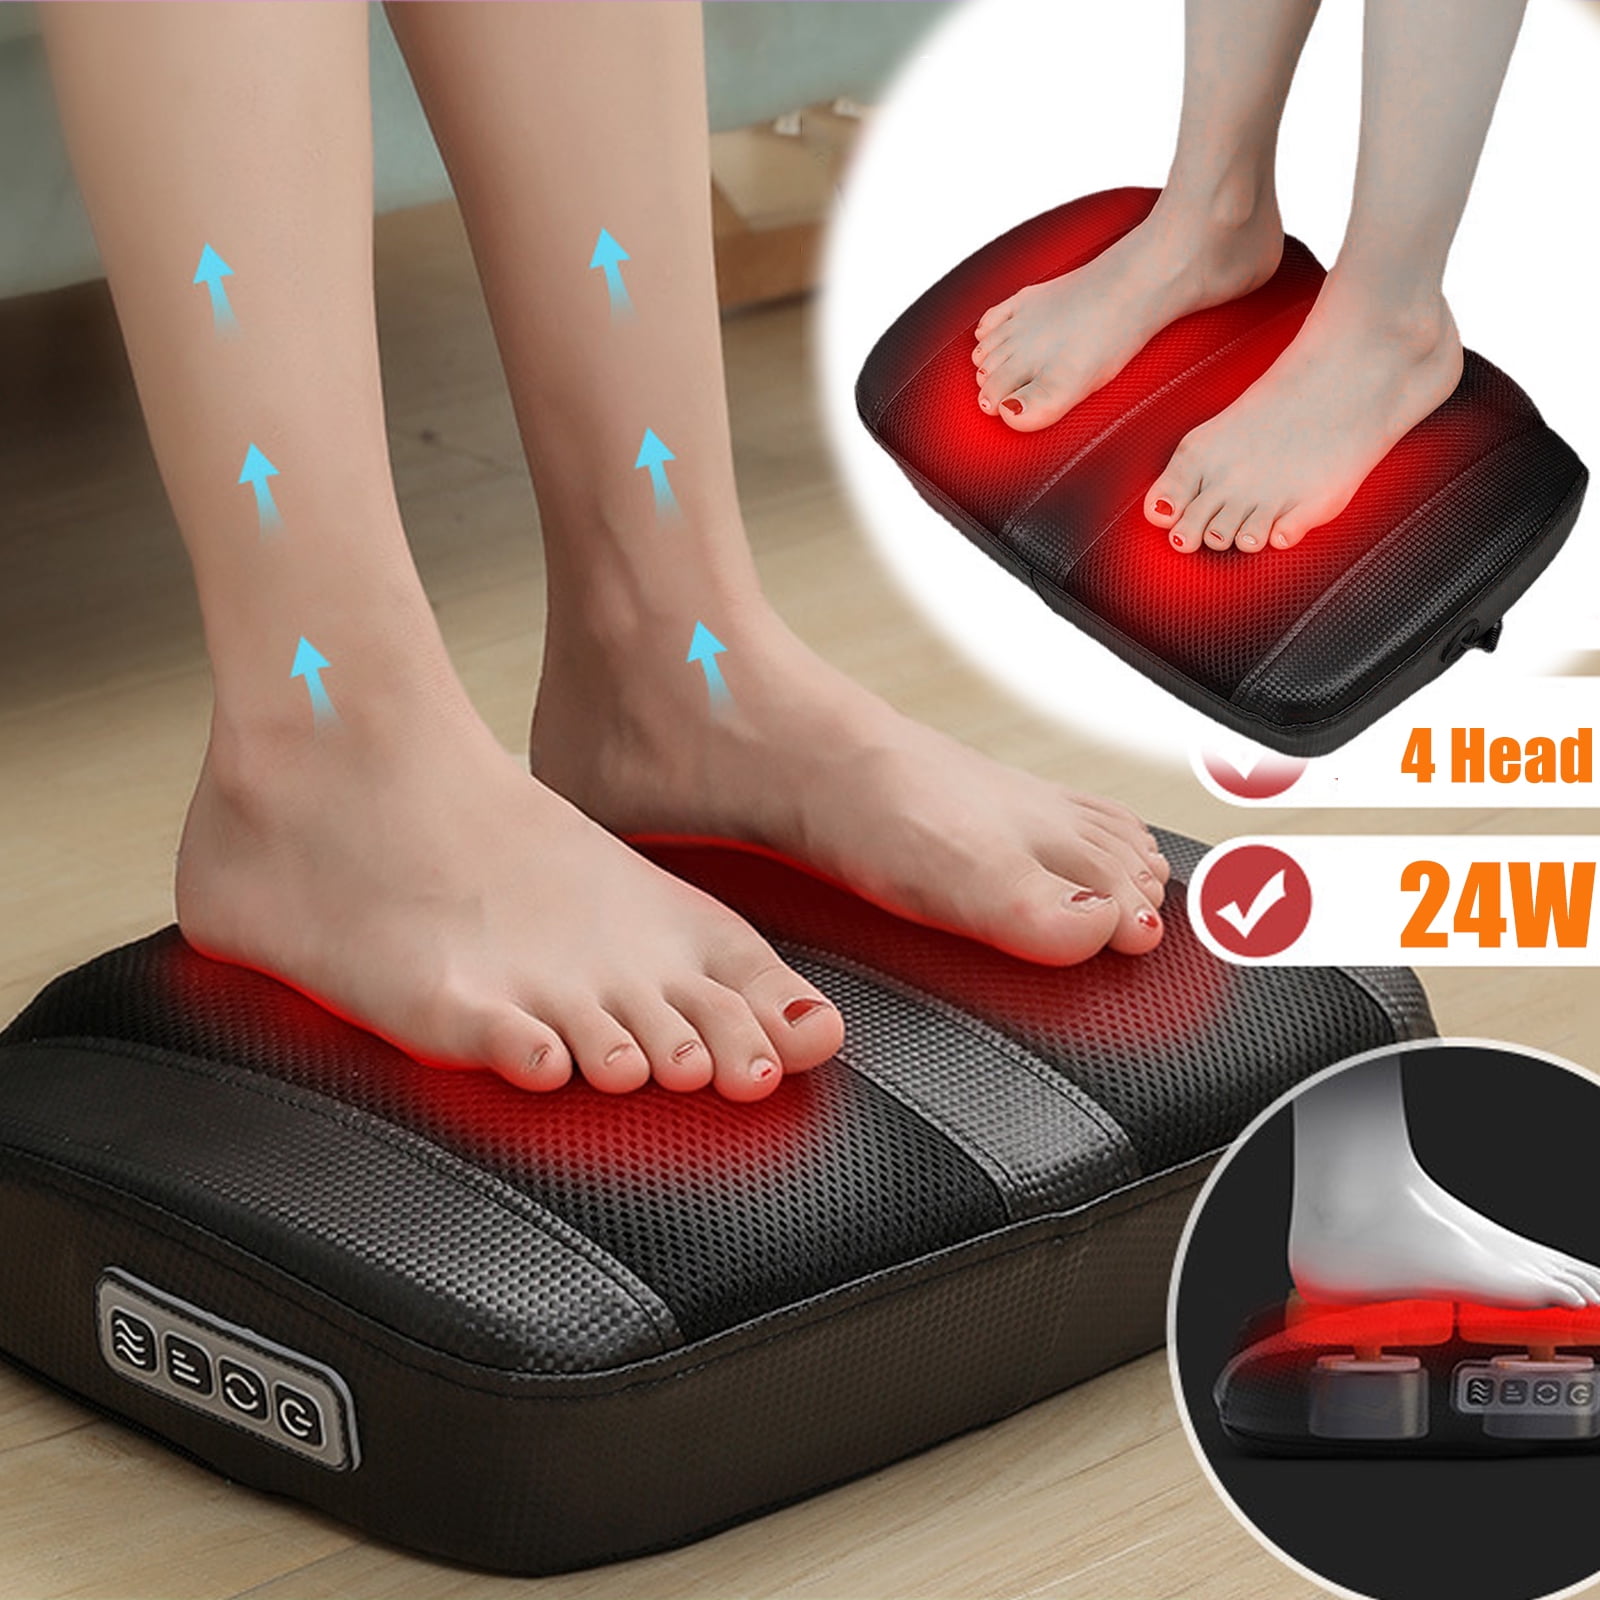 Fitness Lajin Board Foot Massage Foot Pedal Lajin Stool Z2Y6 